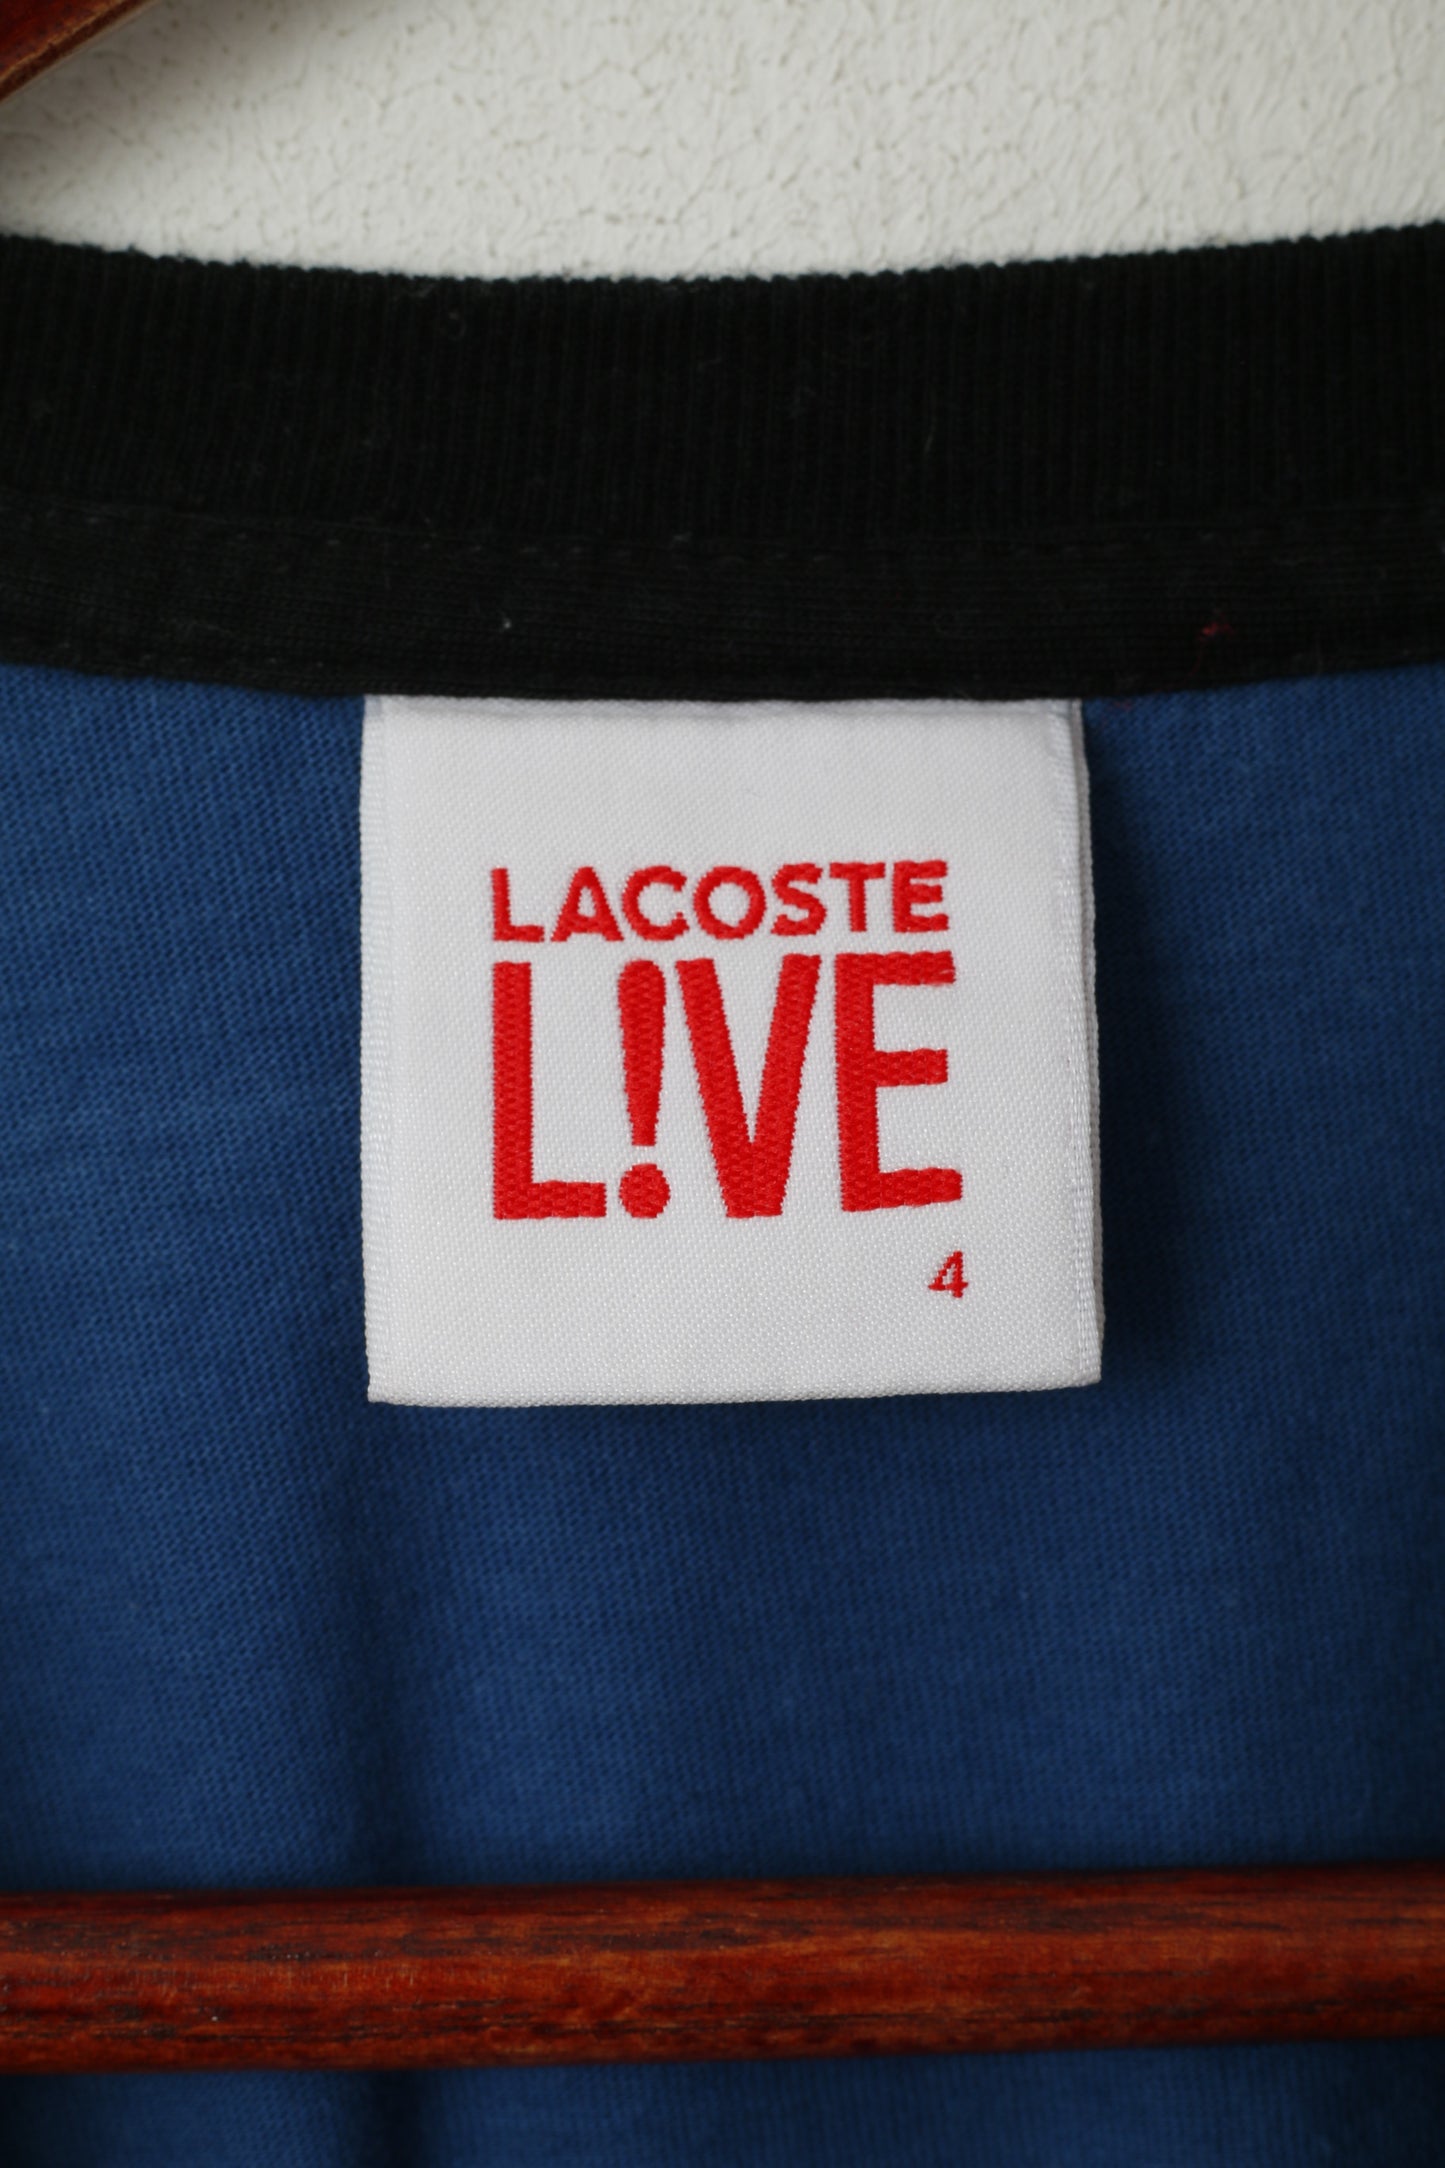 Lacoste Live Men 4 S Shirt Blue Cotton Pocket Crew Neck Classic Top